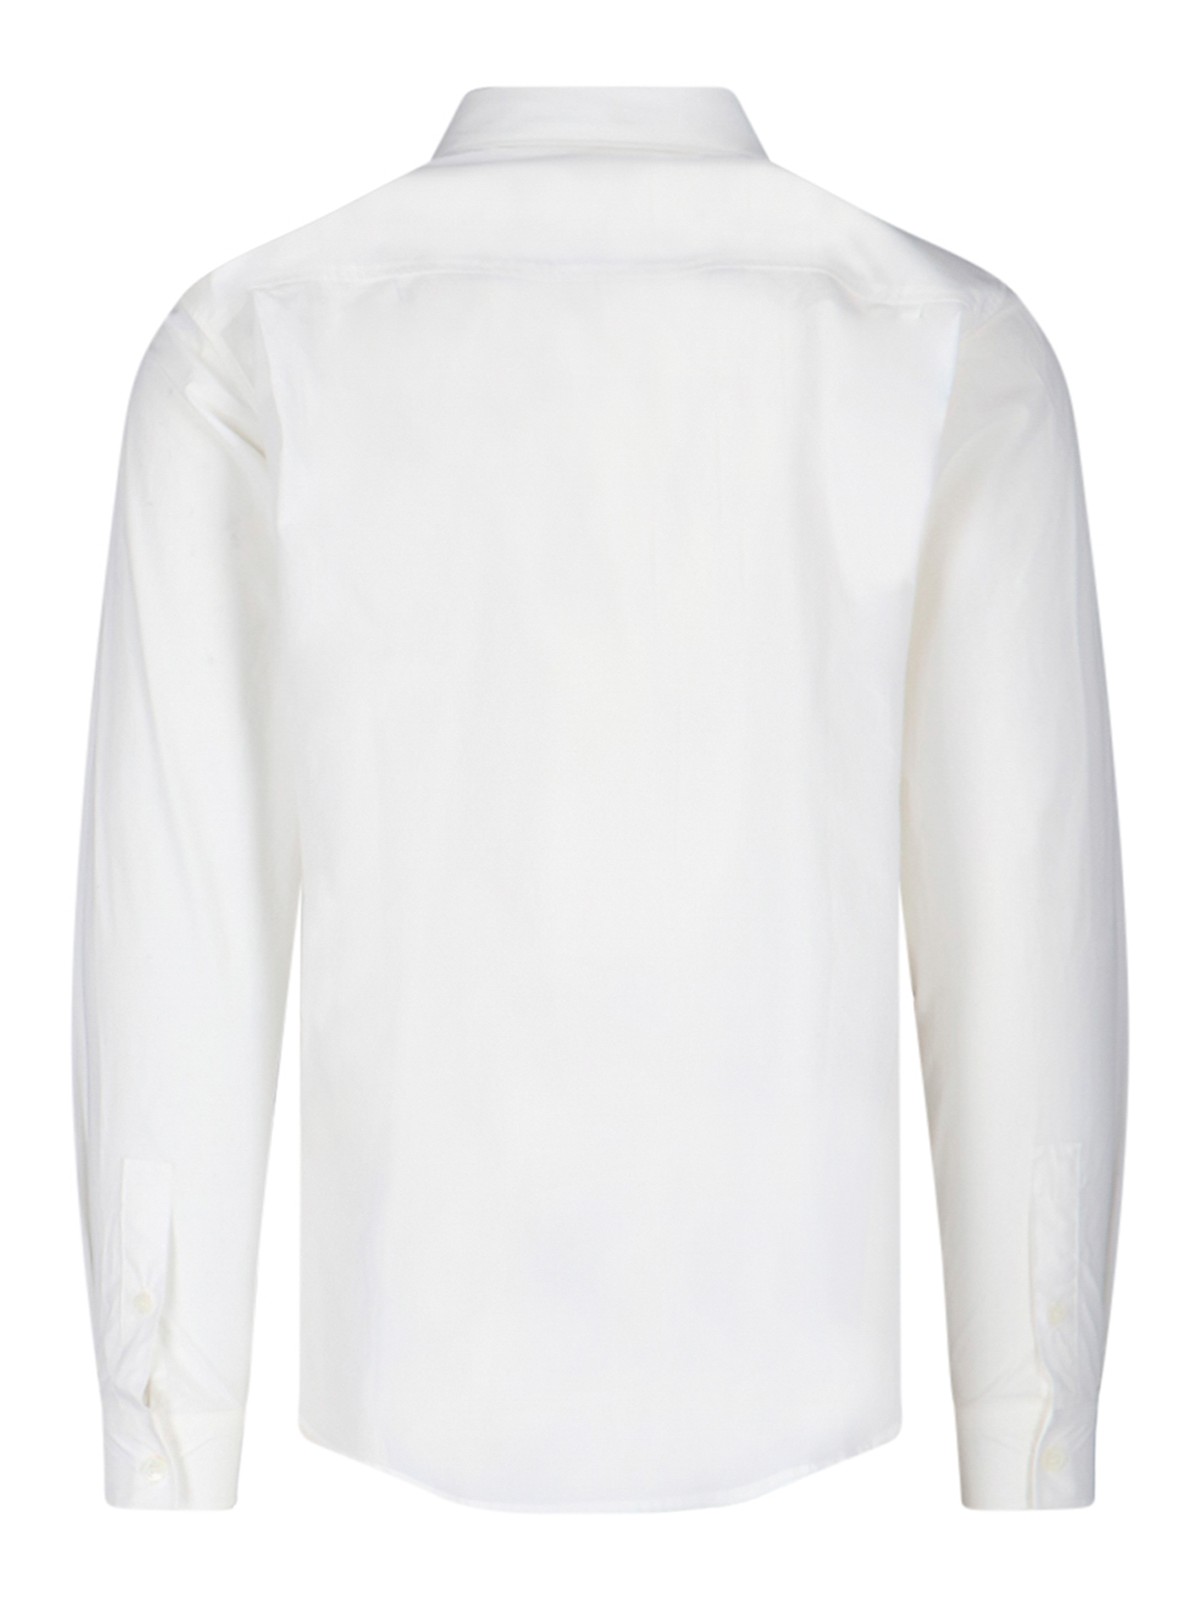 Shop Apc A.p.c. Shirts White